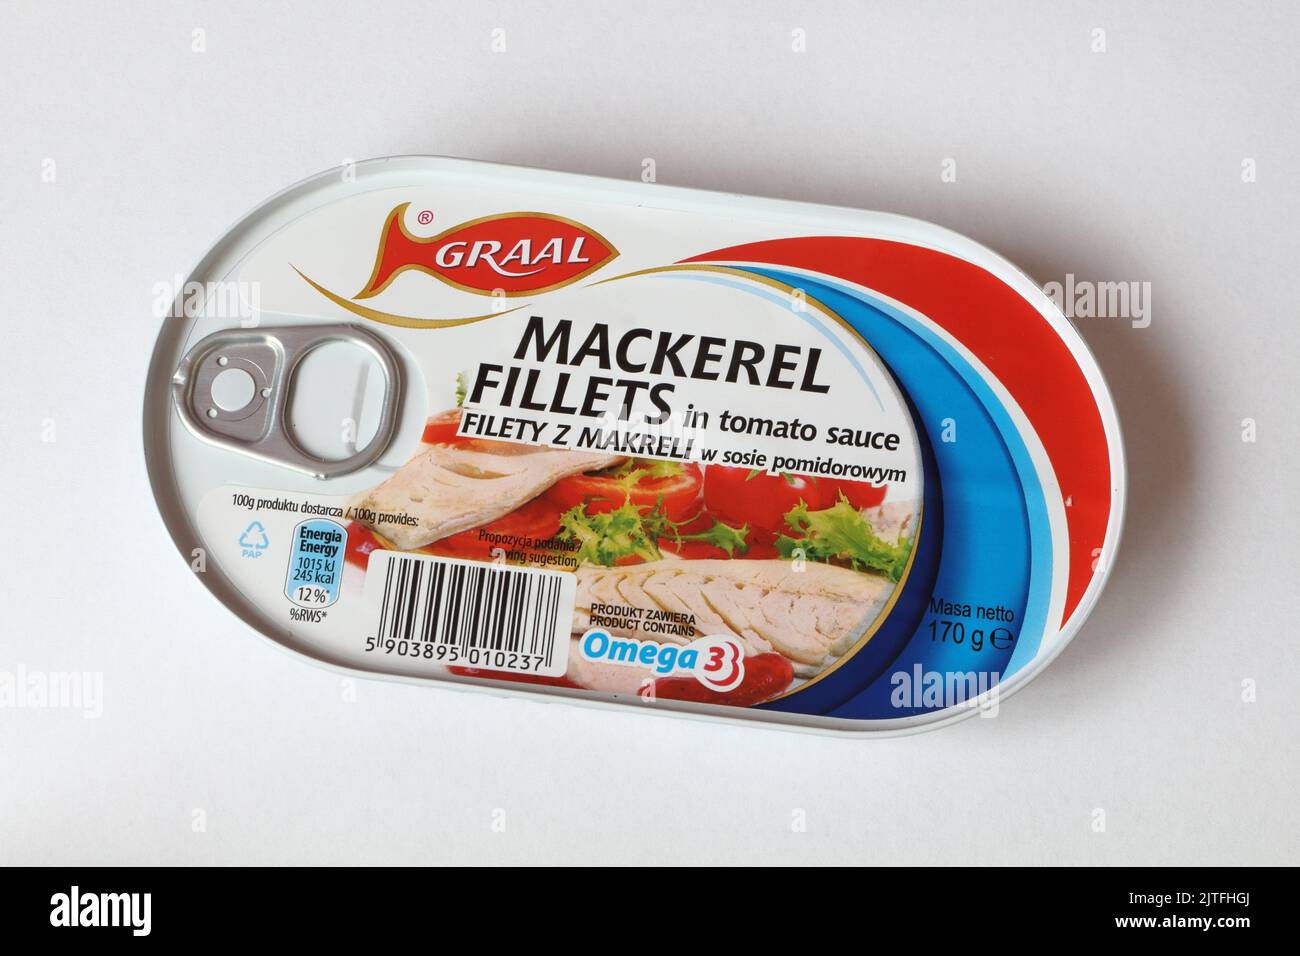 A tin of Graal Mackerel fillets. Polish food company Stock Photo